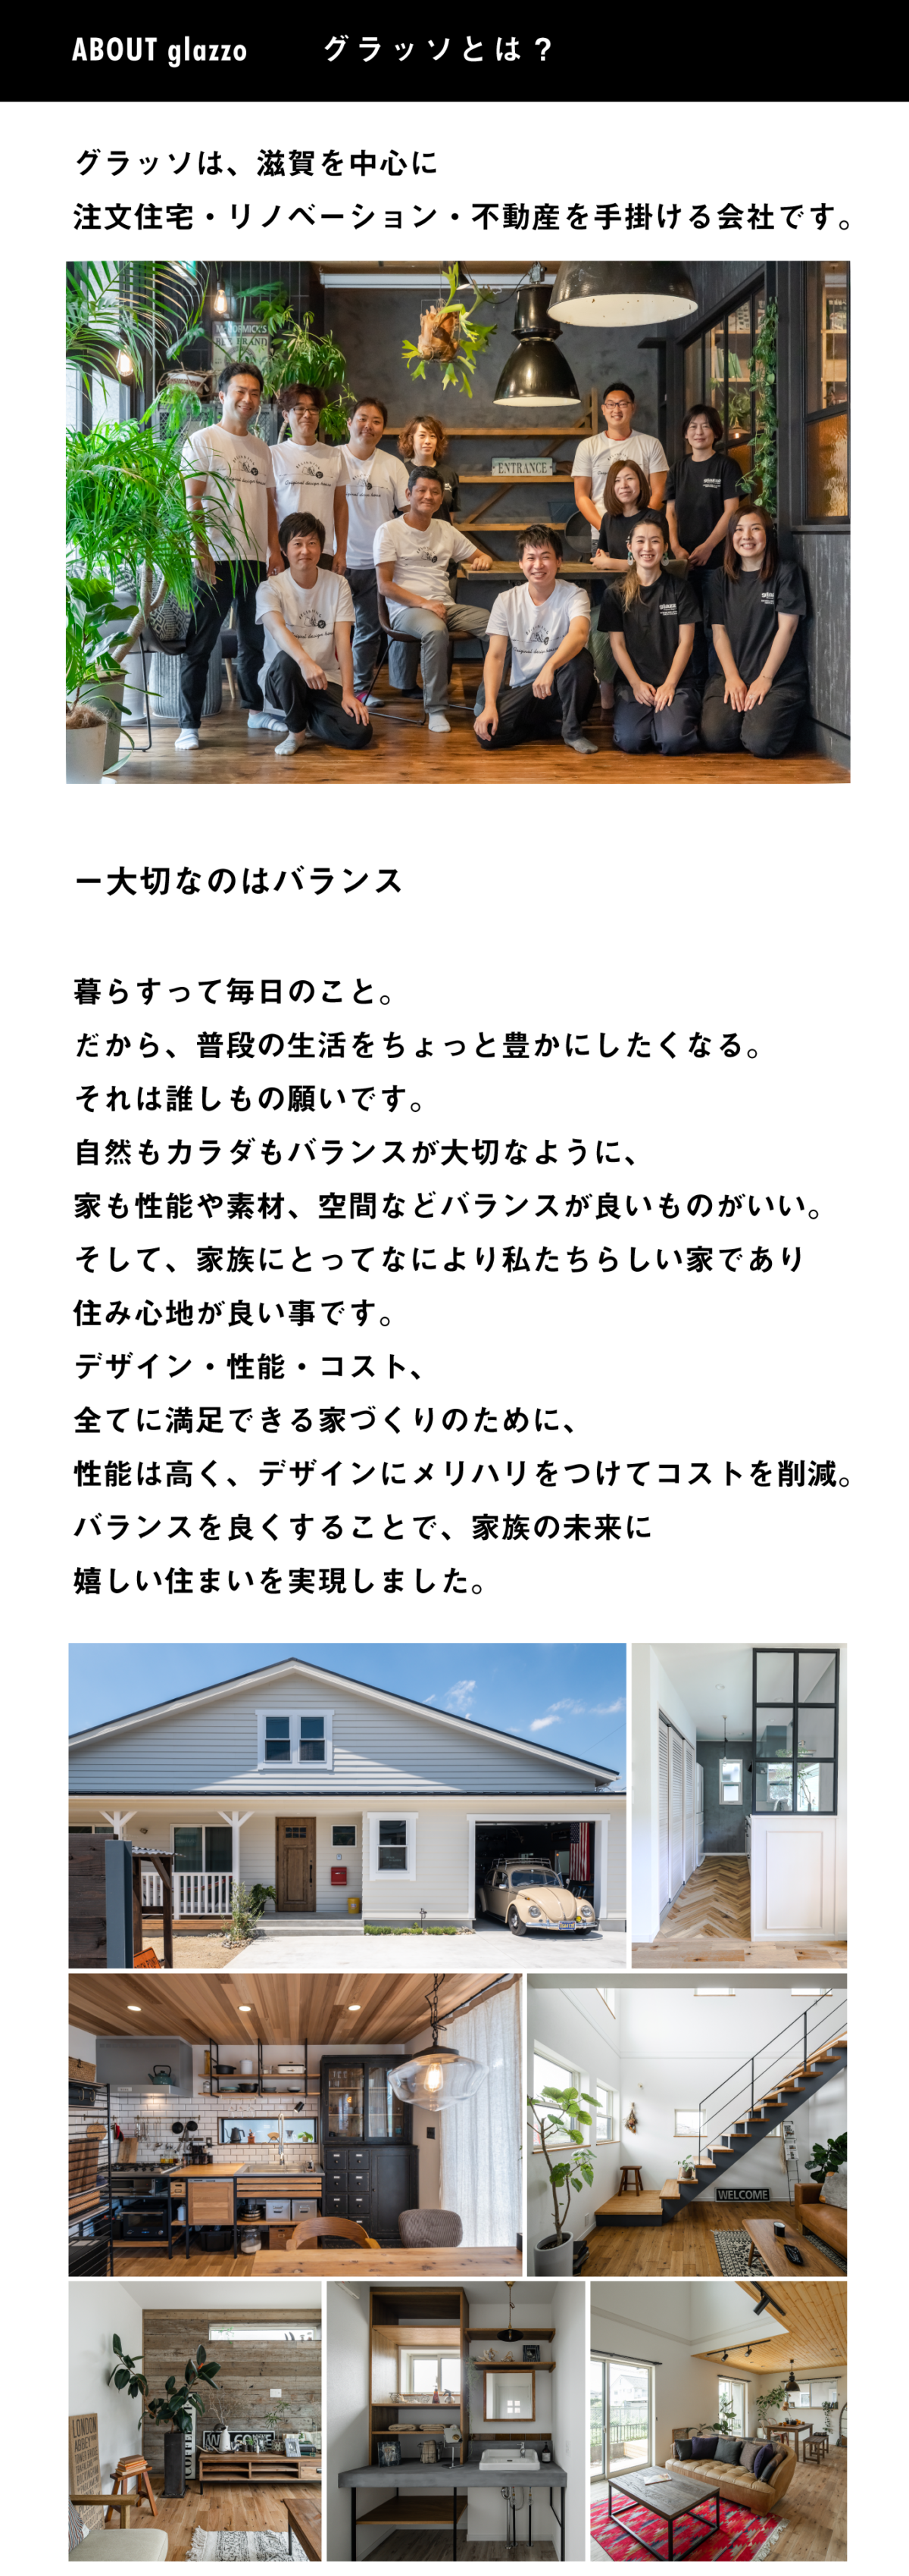 近江八幡西庄モデルハウス完成見学会 滋賀でオリジナルデザインの注文住宅を選ぶならグラッソ Glazzo